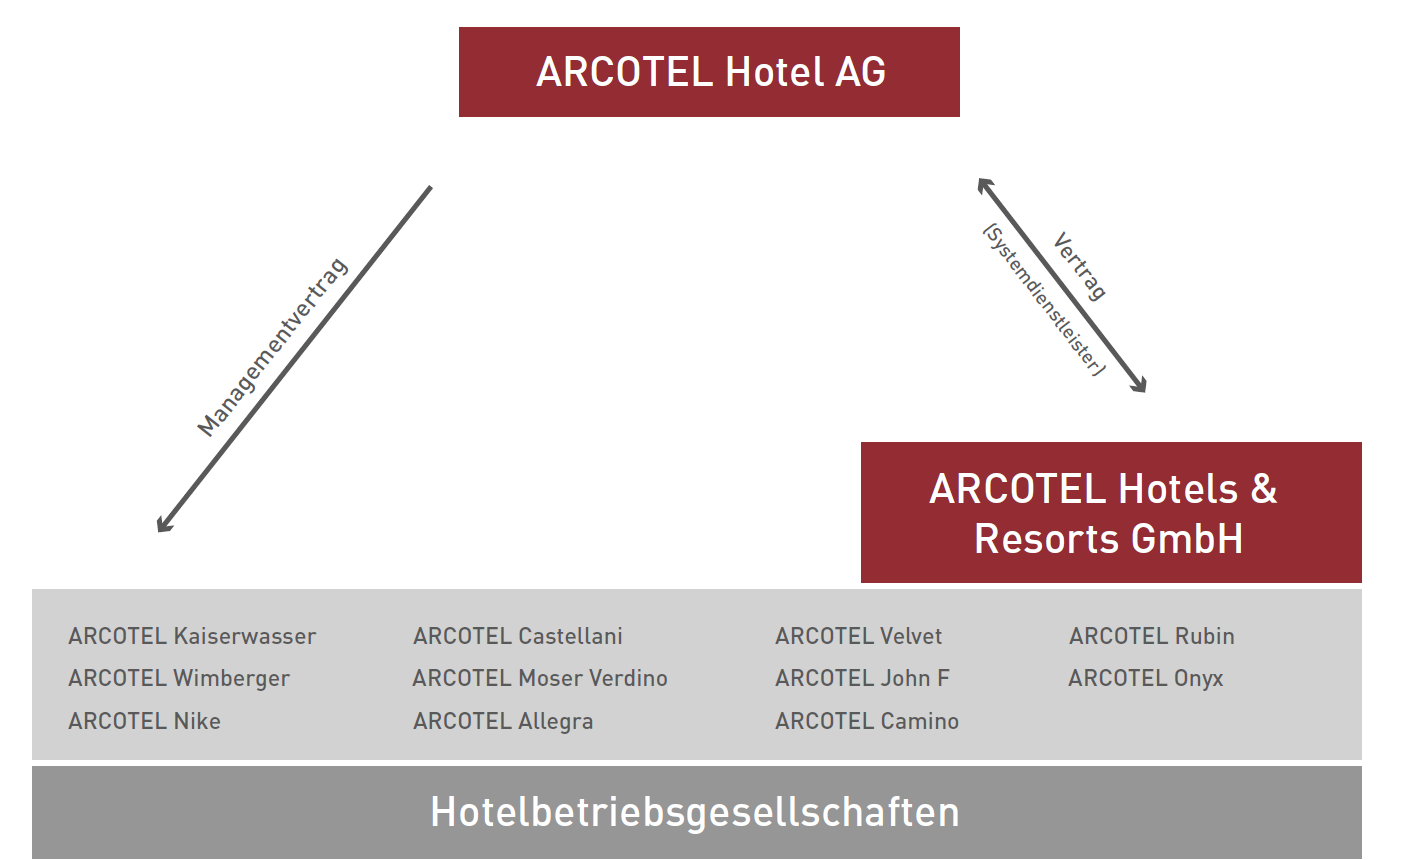 ARCOTEL Der Aufgabenbereich der ARCOTEL Hotel AG umfasst das Management wie auch die Abwicklung neuer